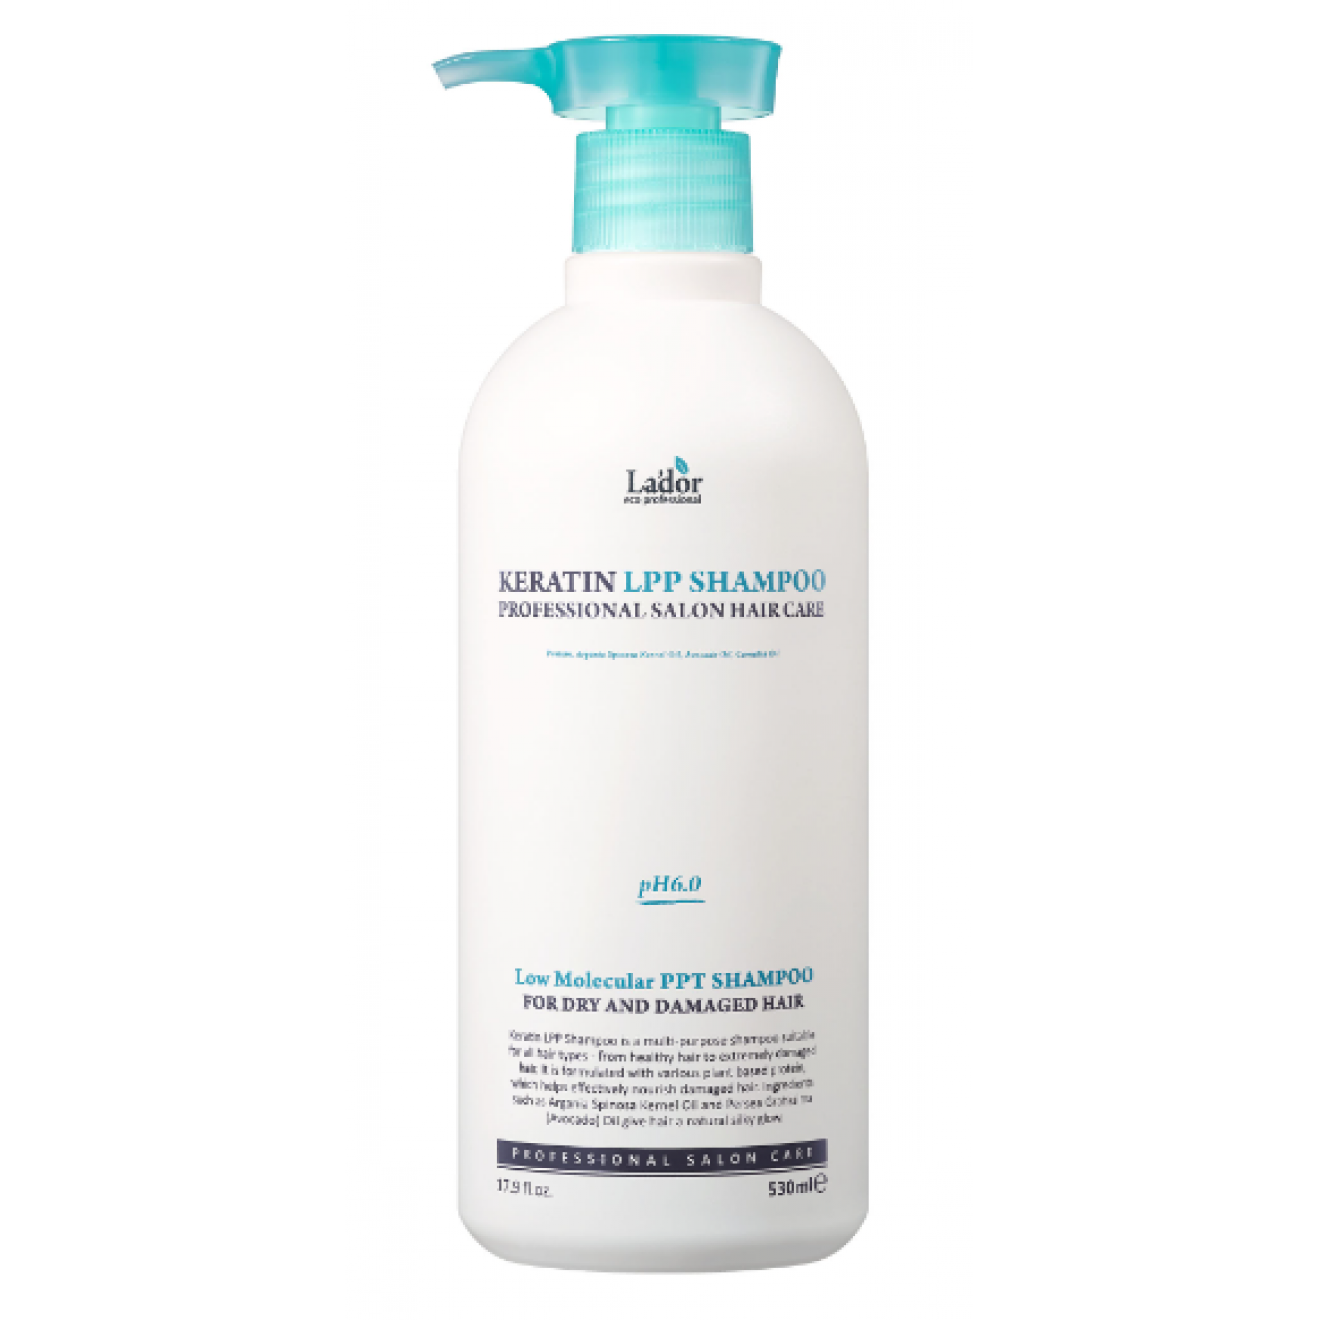 Sampon universal, fără sulfati, pentru părul deteriorat - Lador, Keratin LPP Shampoo, 530 ml